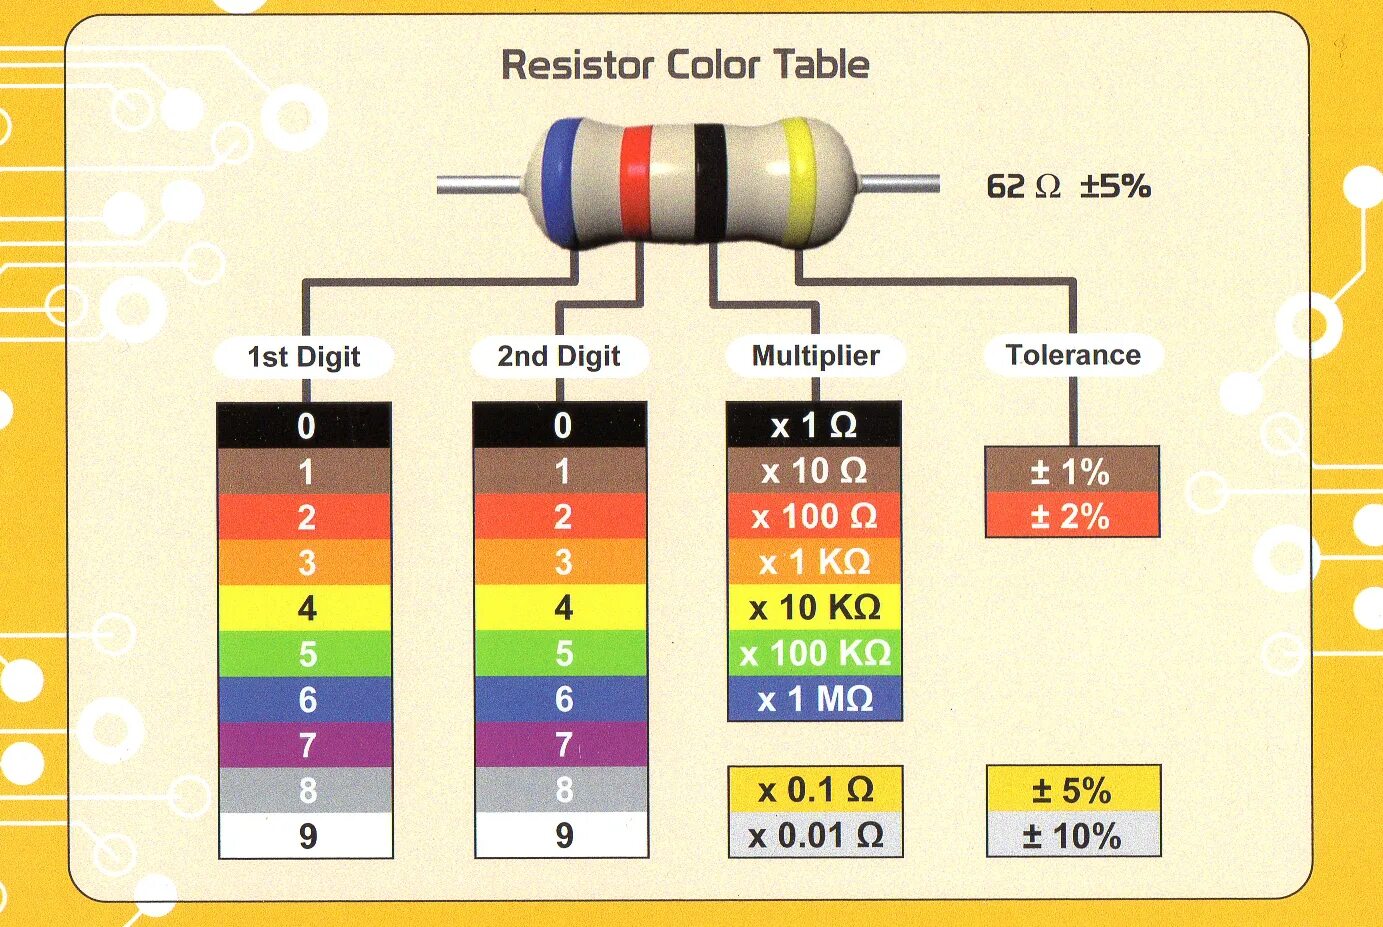 Номинал цветного резистора. Цветовая маркировка резисторов 4 полосы. Цветовая маркировка резисторов 2 полосы. Цветовая маркировка резисторов 5 полос. Резистор 0.22 Ома цветовая маркировка.